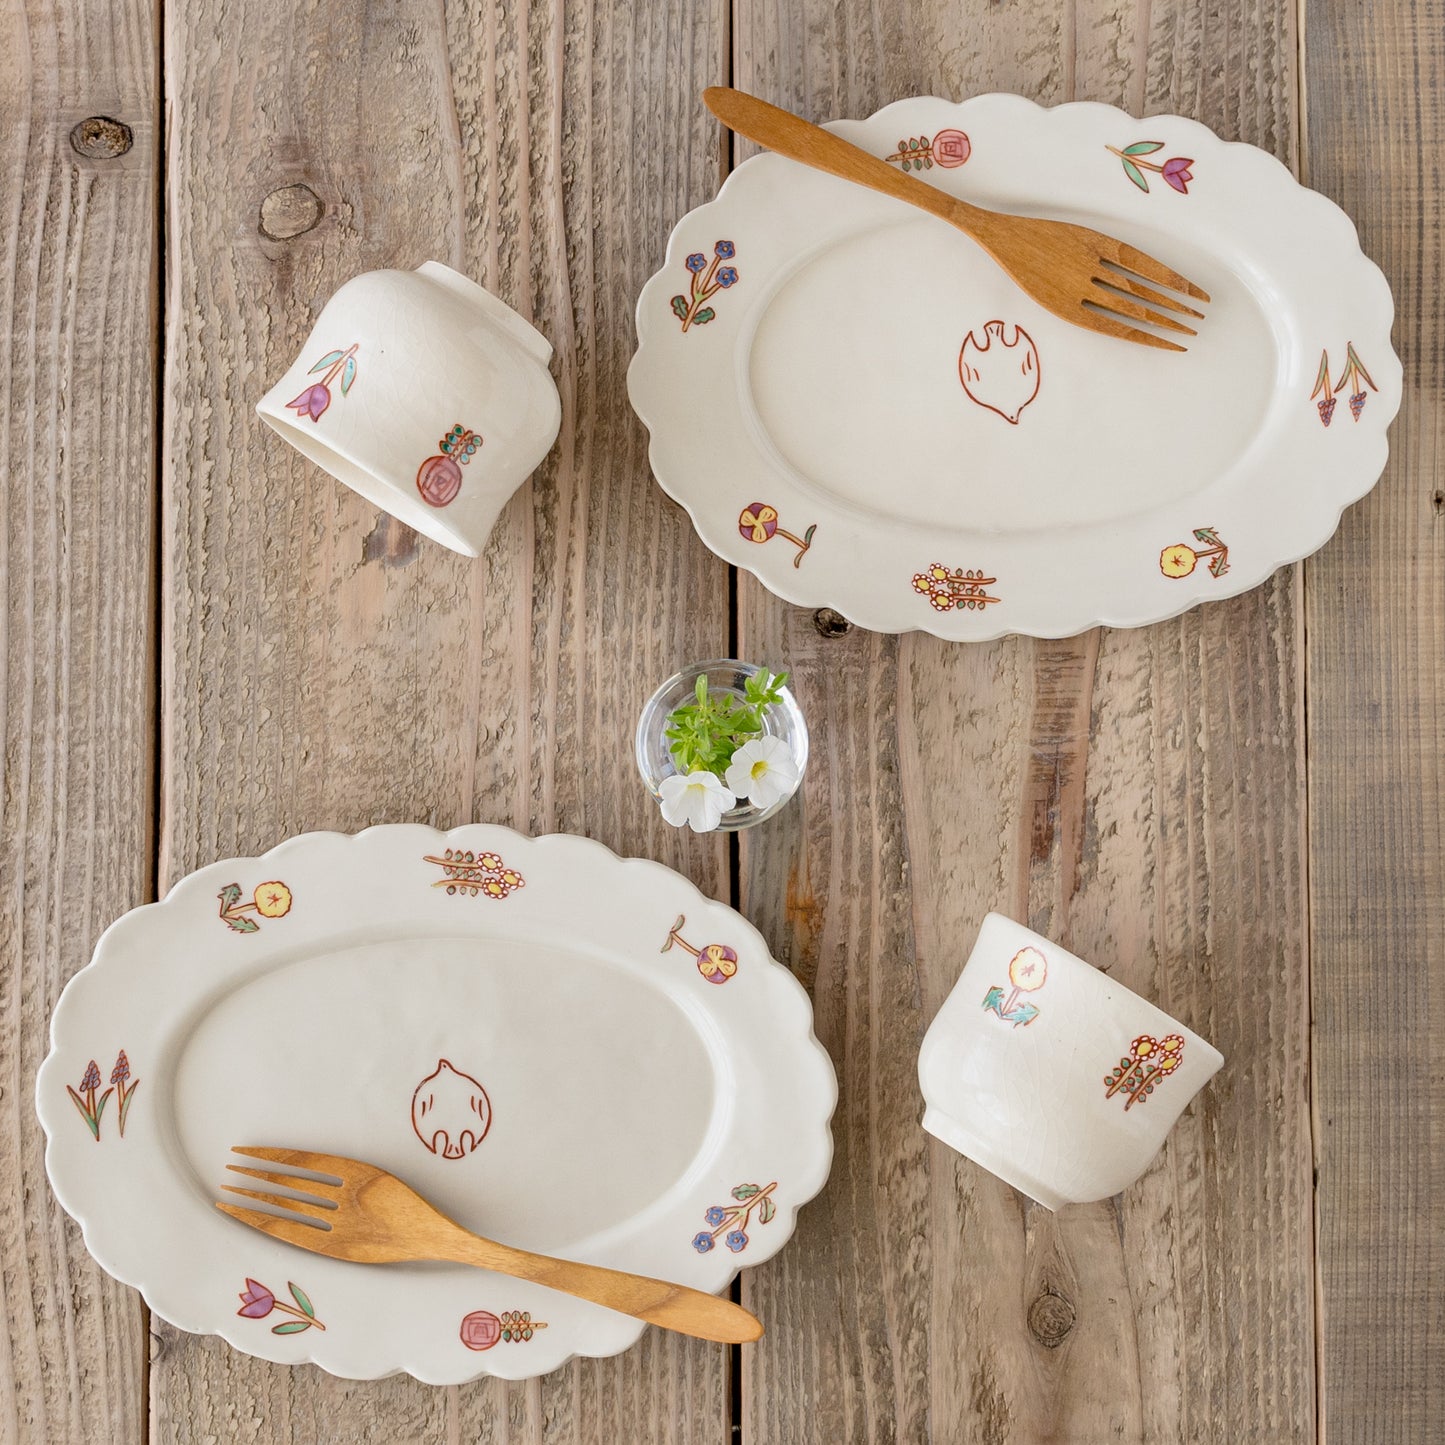 食卓がもっと可愛く楽しくなる長浜由起子さんの小花絵付フリーカップとオーバル皿